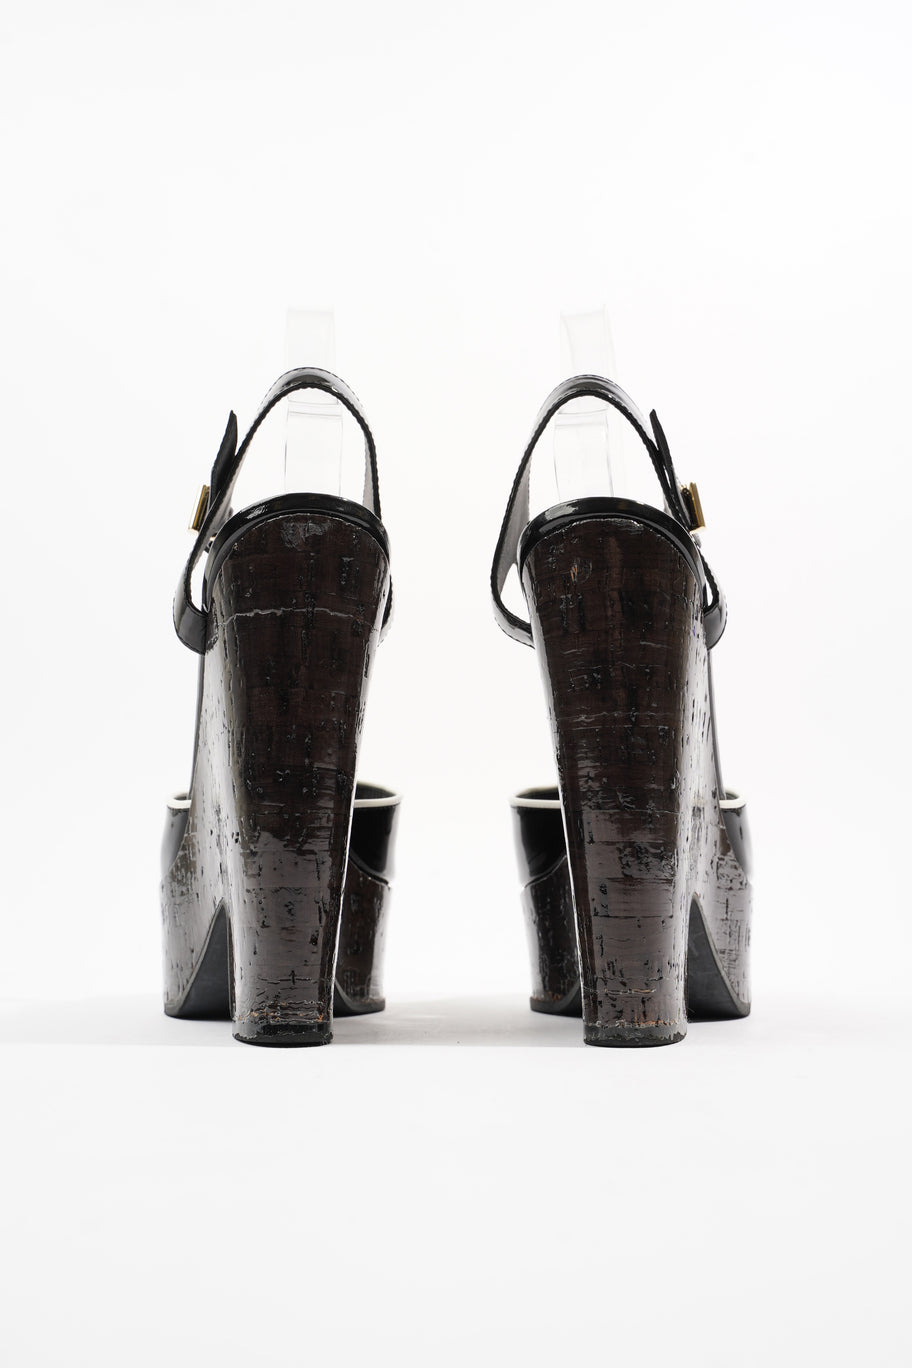 Wedge Sandal 140 Black Patent Leather EU 37 UK 4 Image 6